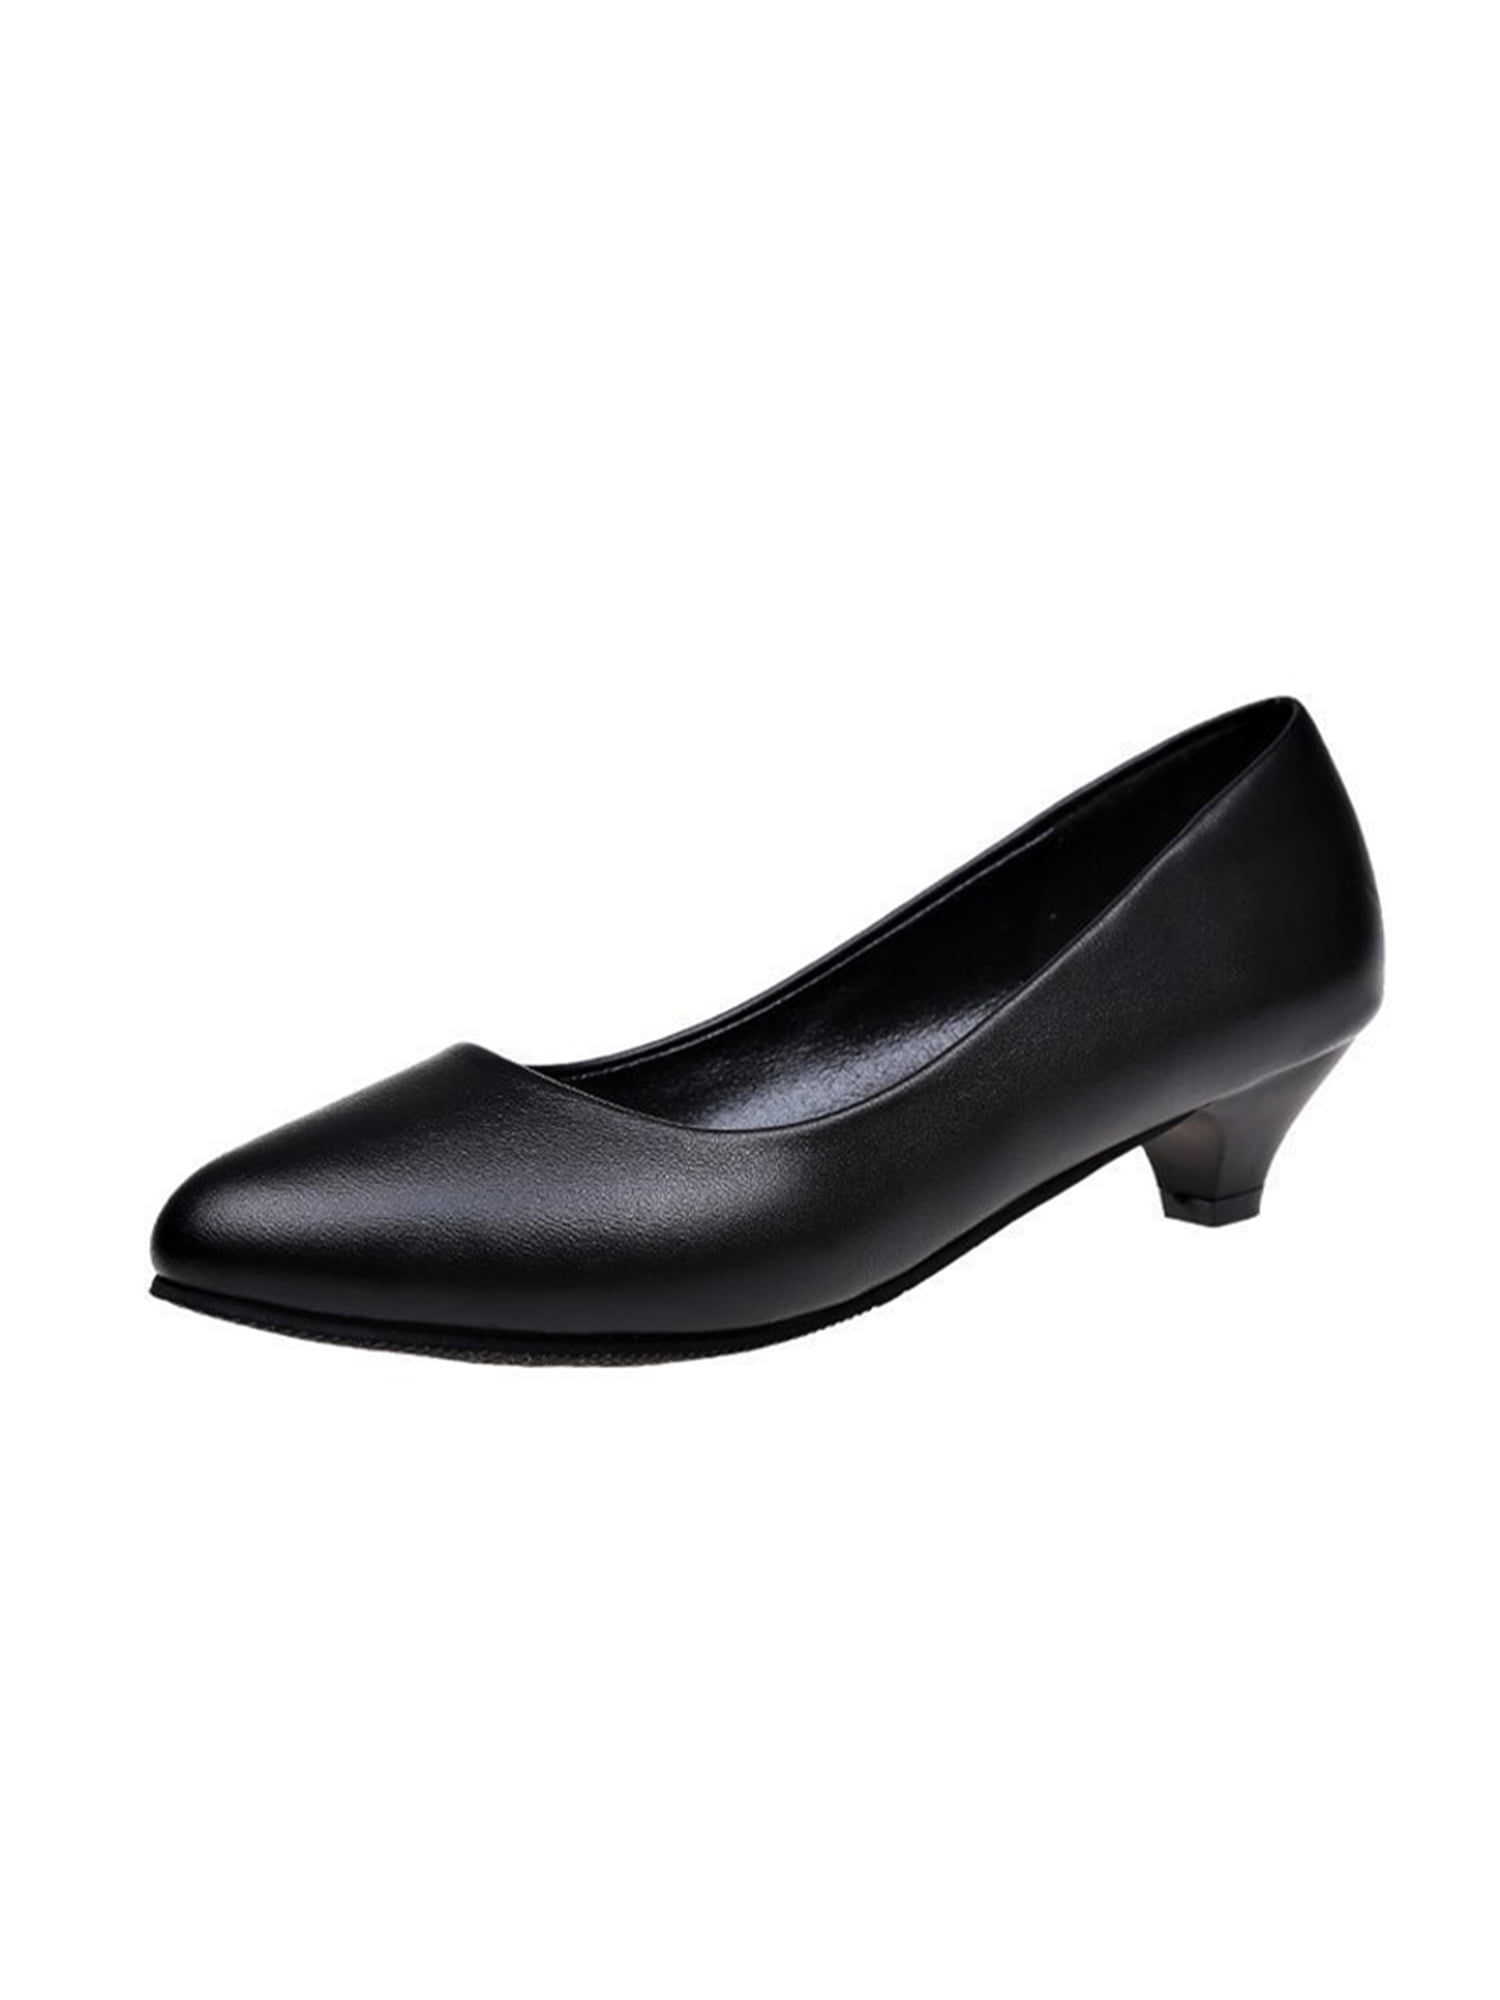 Crocowalk Women Dress Shoes Round Toe Heels Slip On Pumps Womens Office ...